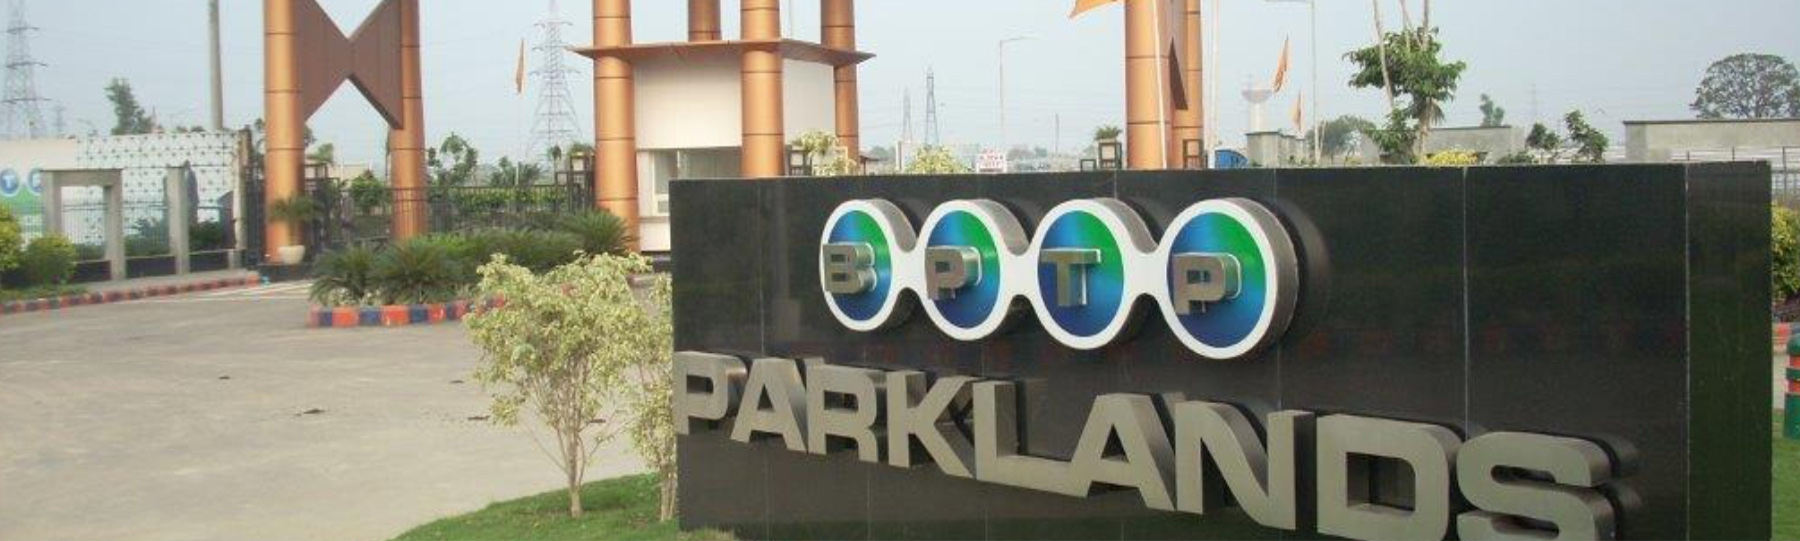 BPTP Parklands in Faridabad